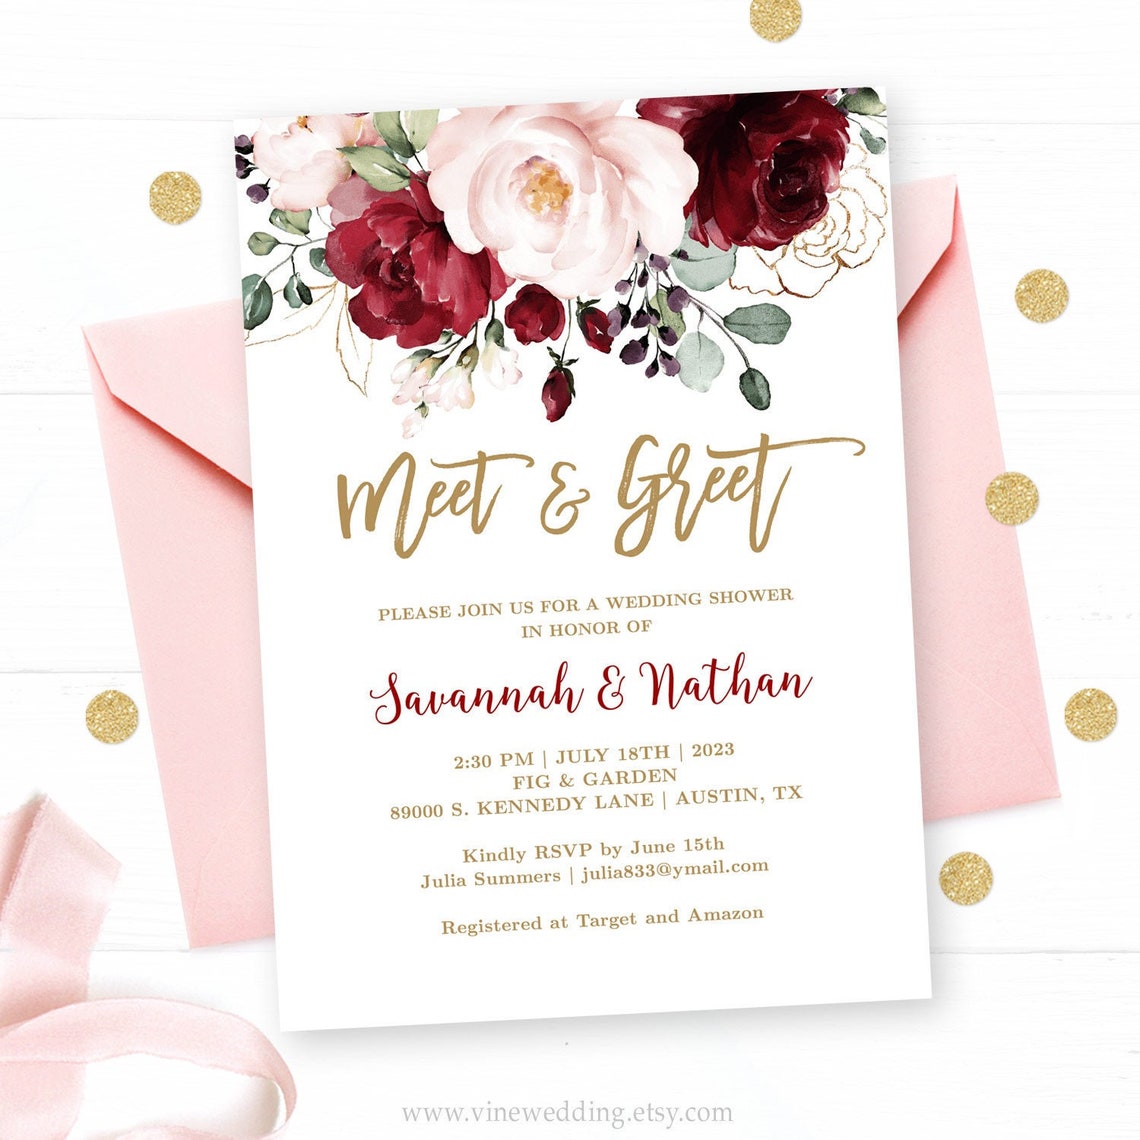 meet-greet-invitation-template-editable-printable-wedding-etsy